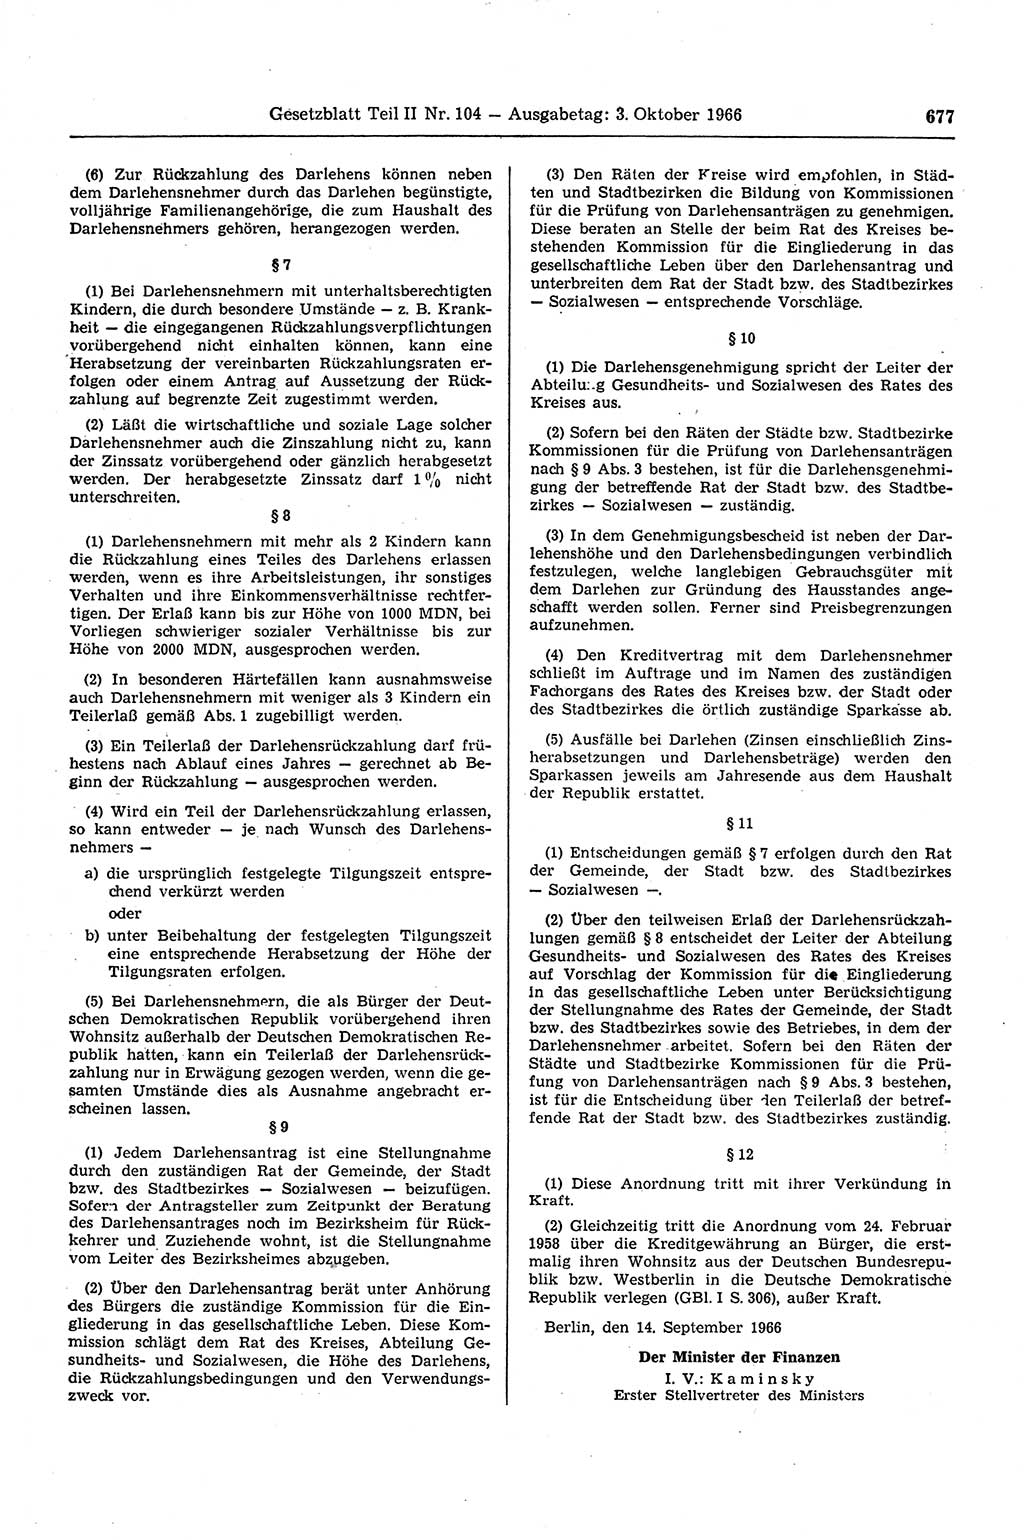 Gesetzblatt (GBl.) der Deutschen Demokratischen Republik (DDR) Teil ⅠⅠ 1966, Seite 677 (GBl. DDR ⅠⅠ 1966, S. 677)